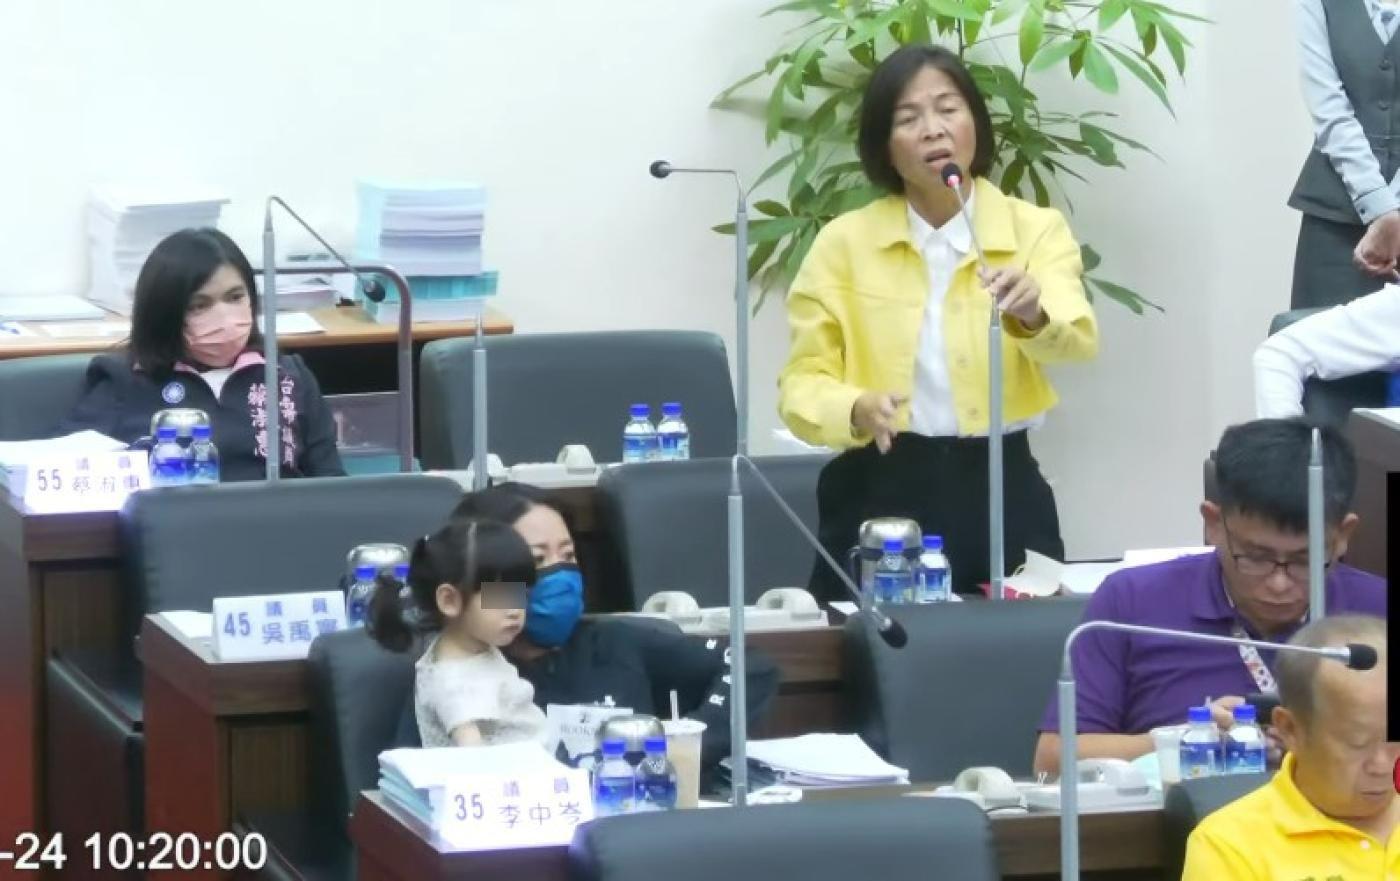 國民黨籍議員李中岑帶著3歲女兒進議事廳開會，引發民進黨男議員不滿。台南市議會提供